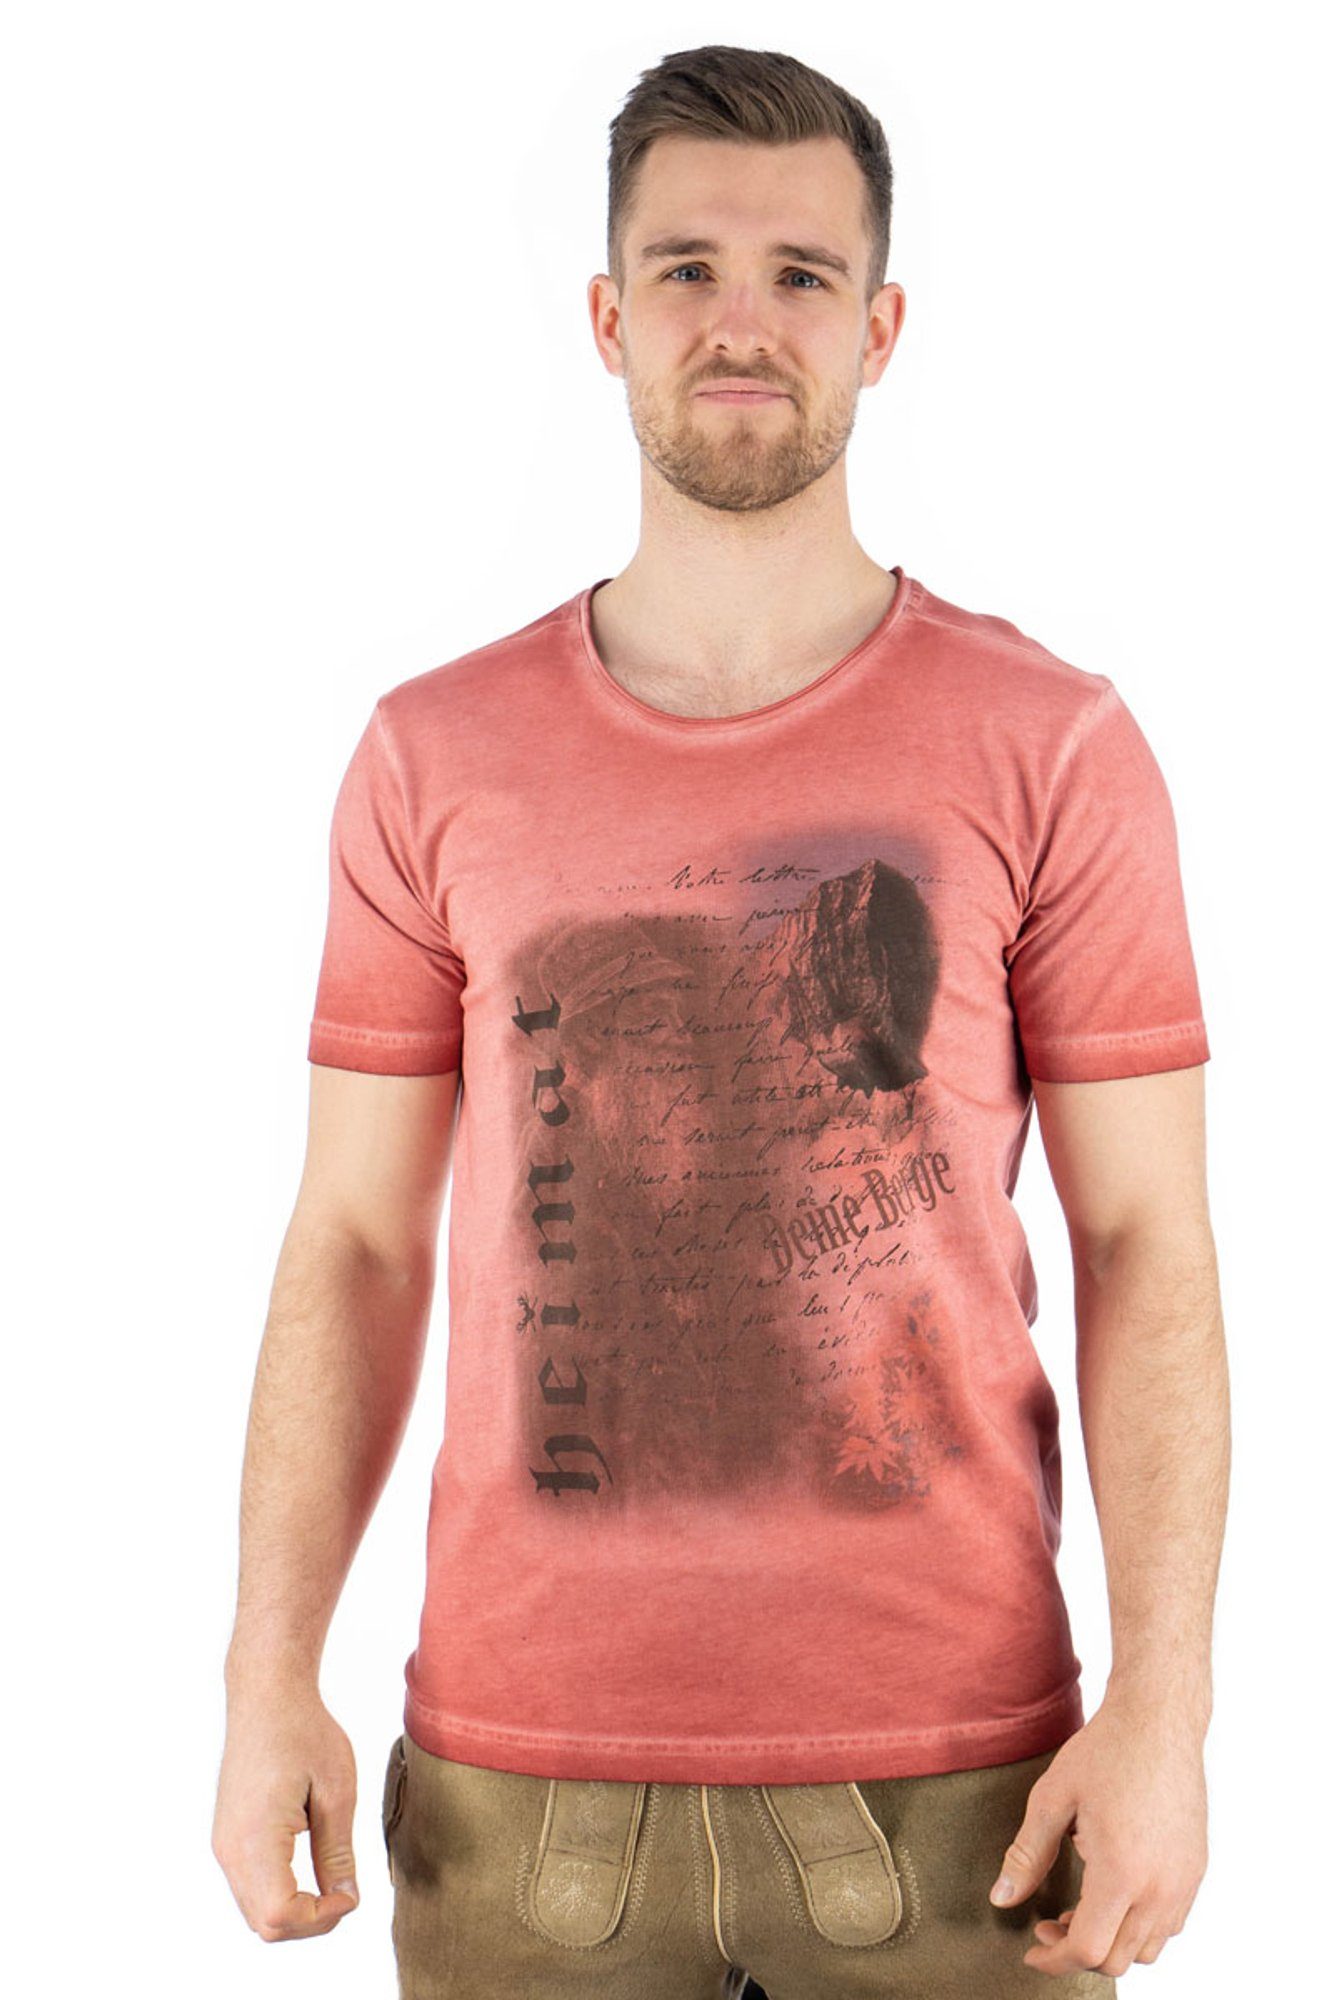 mit Praiol OS-Trachten Motivdruck Trachtenshirt Kurzarm T-Shirt weinrot